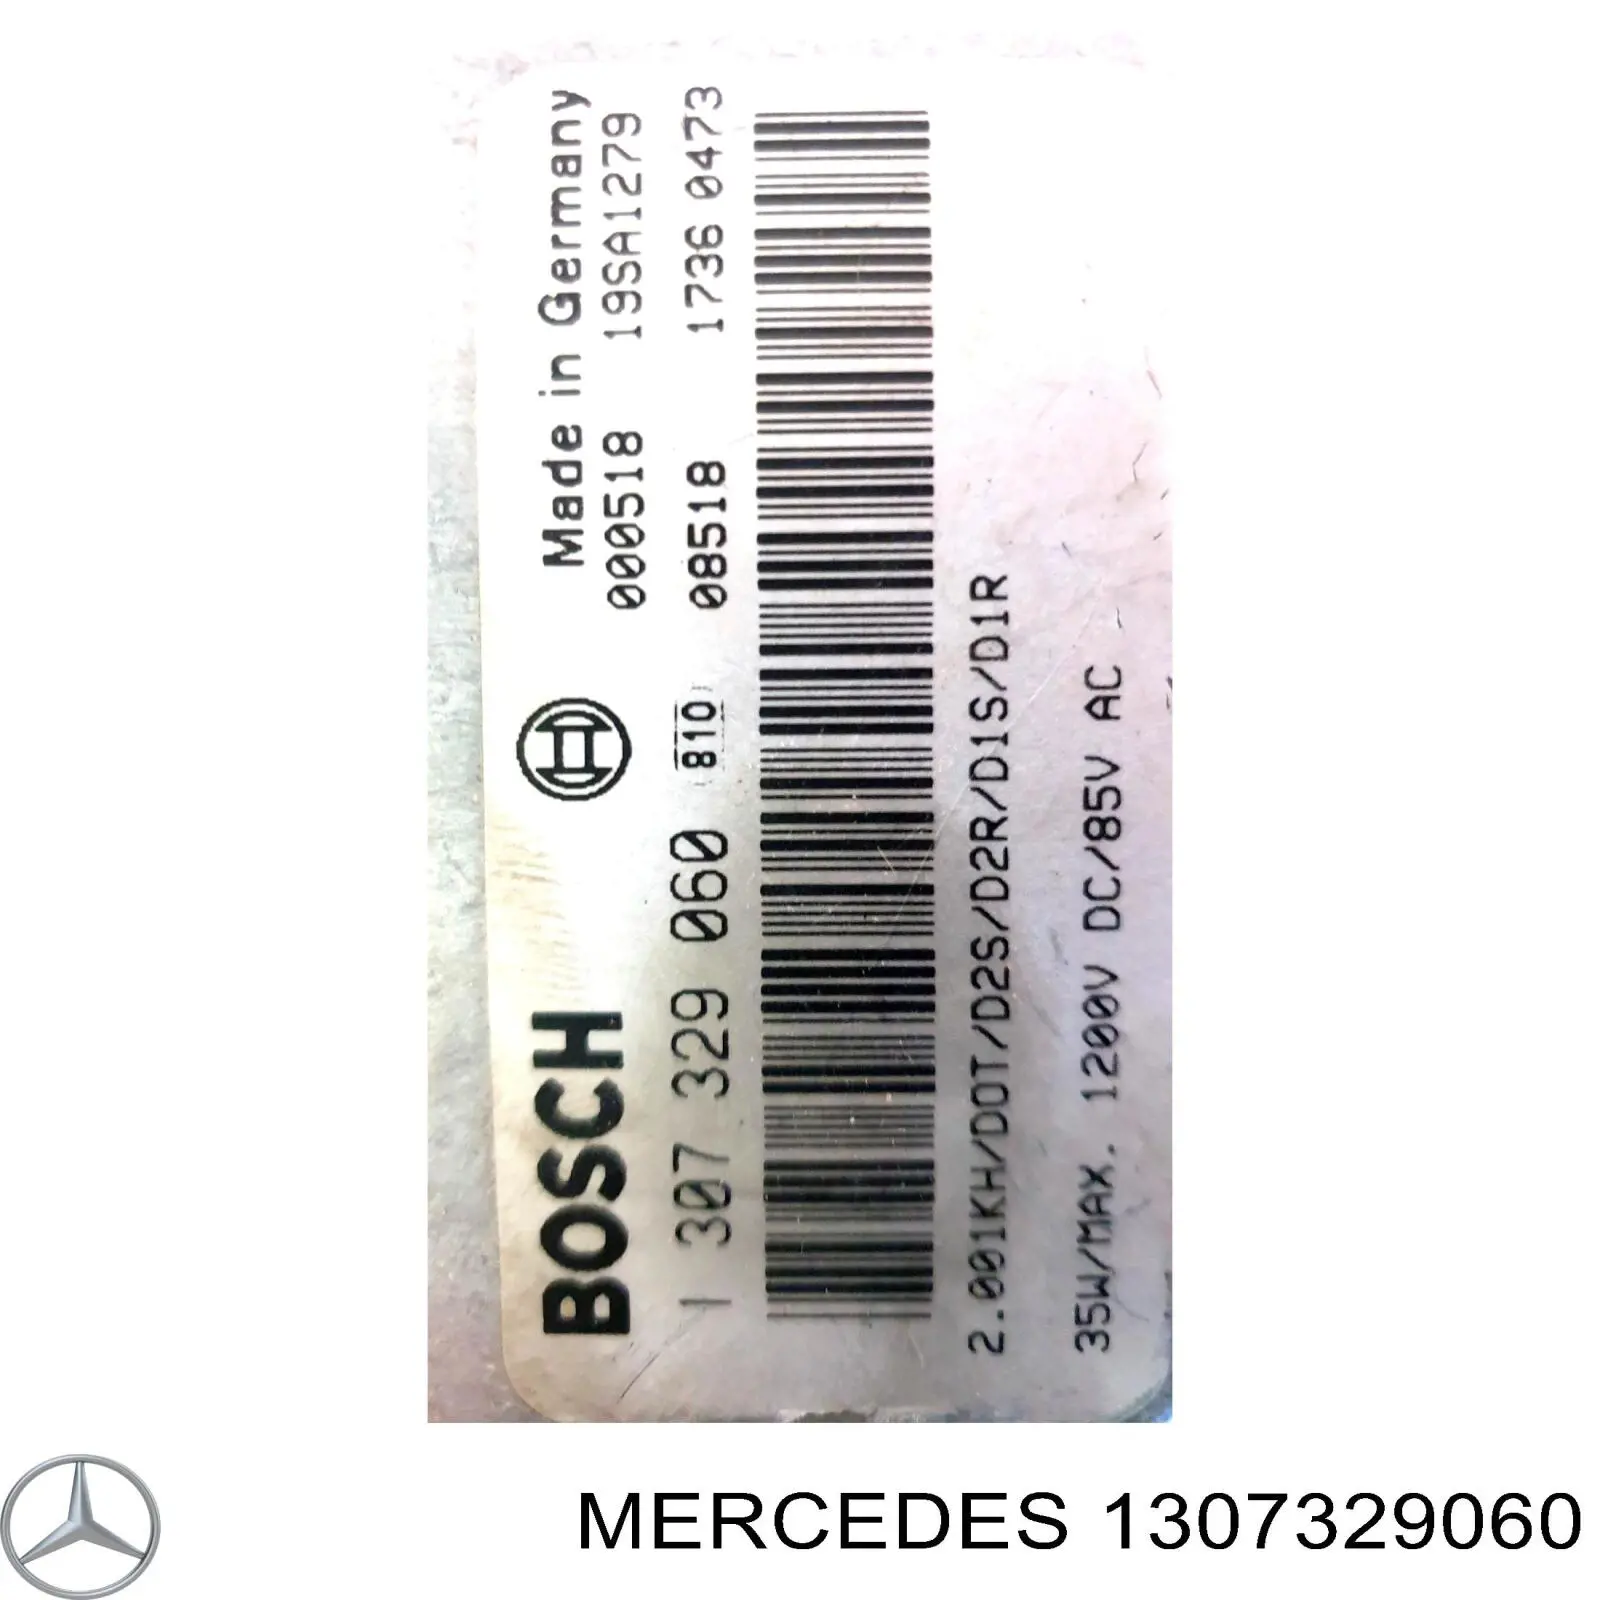 2038202526 Mercedes bobina de reactancia, lámpara de descarga de gas